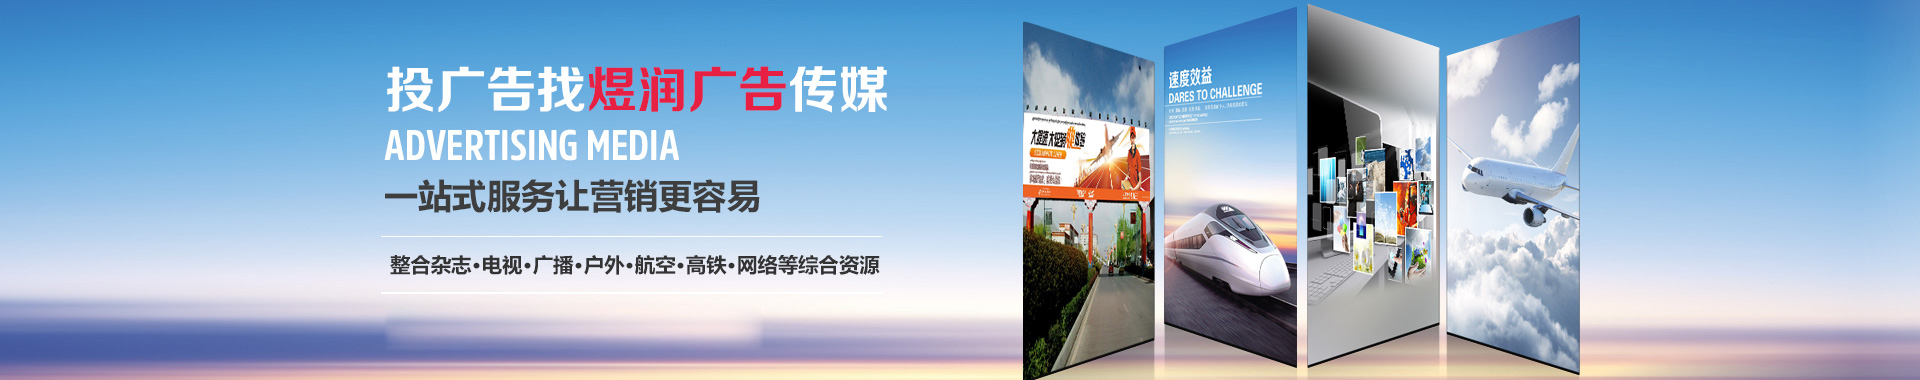 贵在上海杂志广告/杂志广告刊登电话及价格